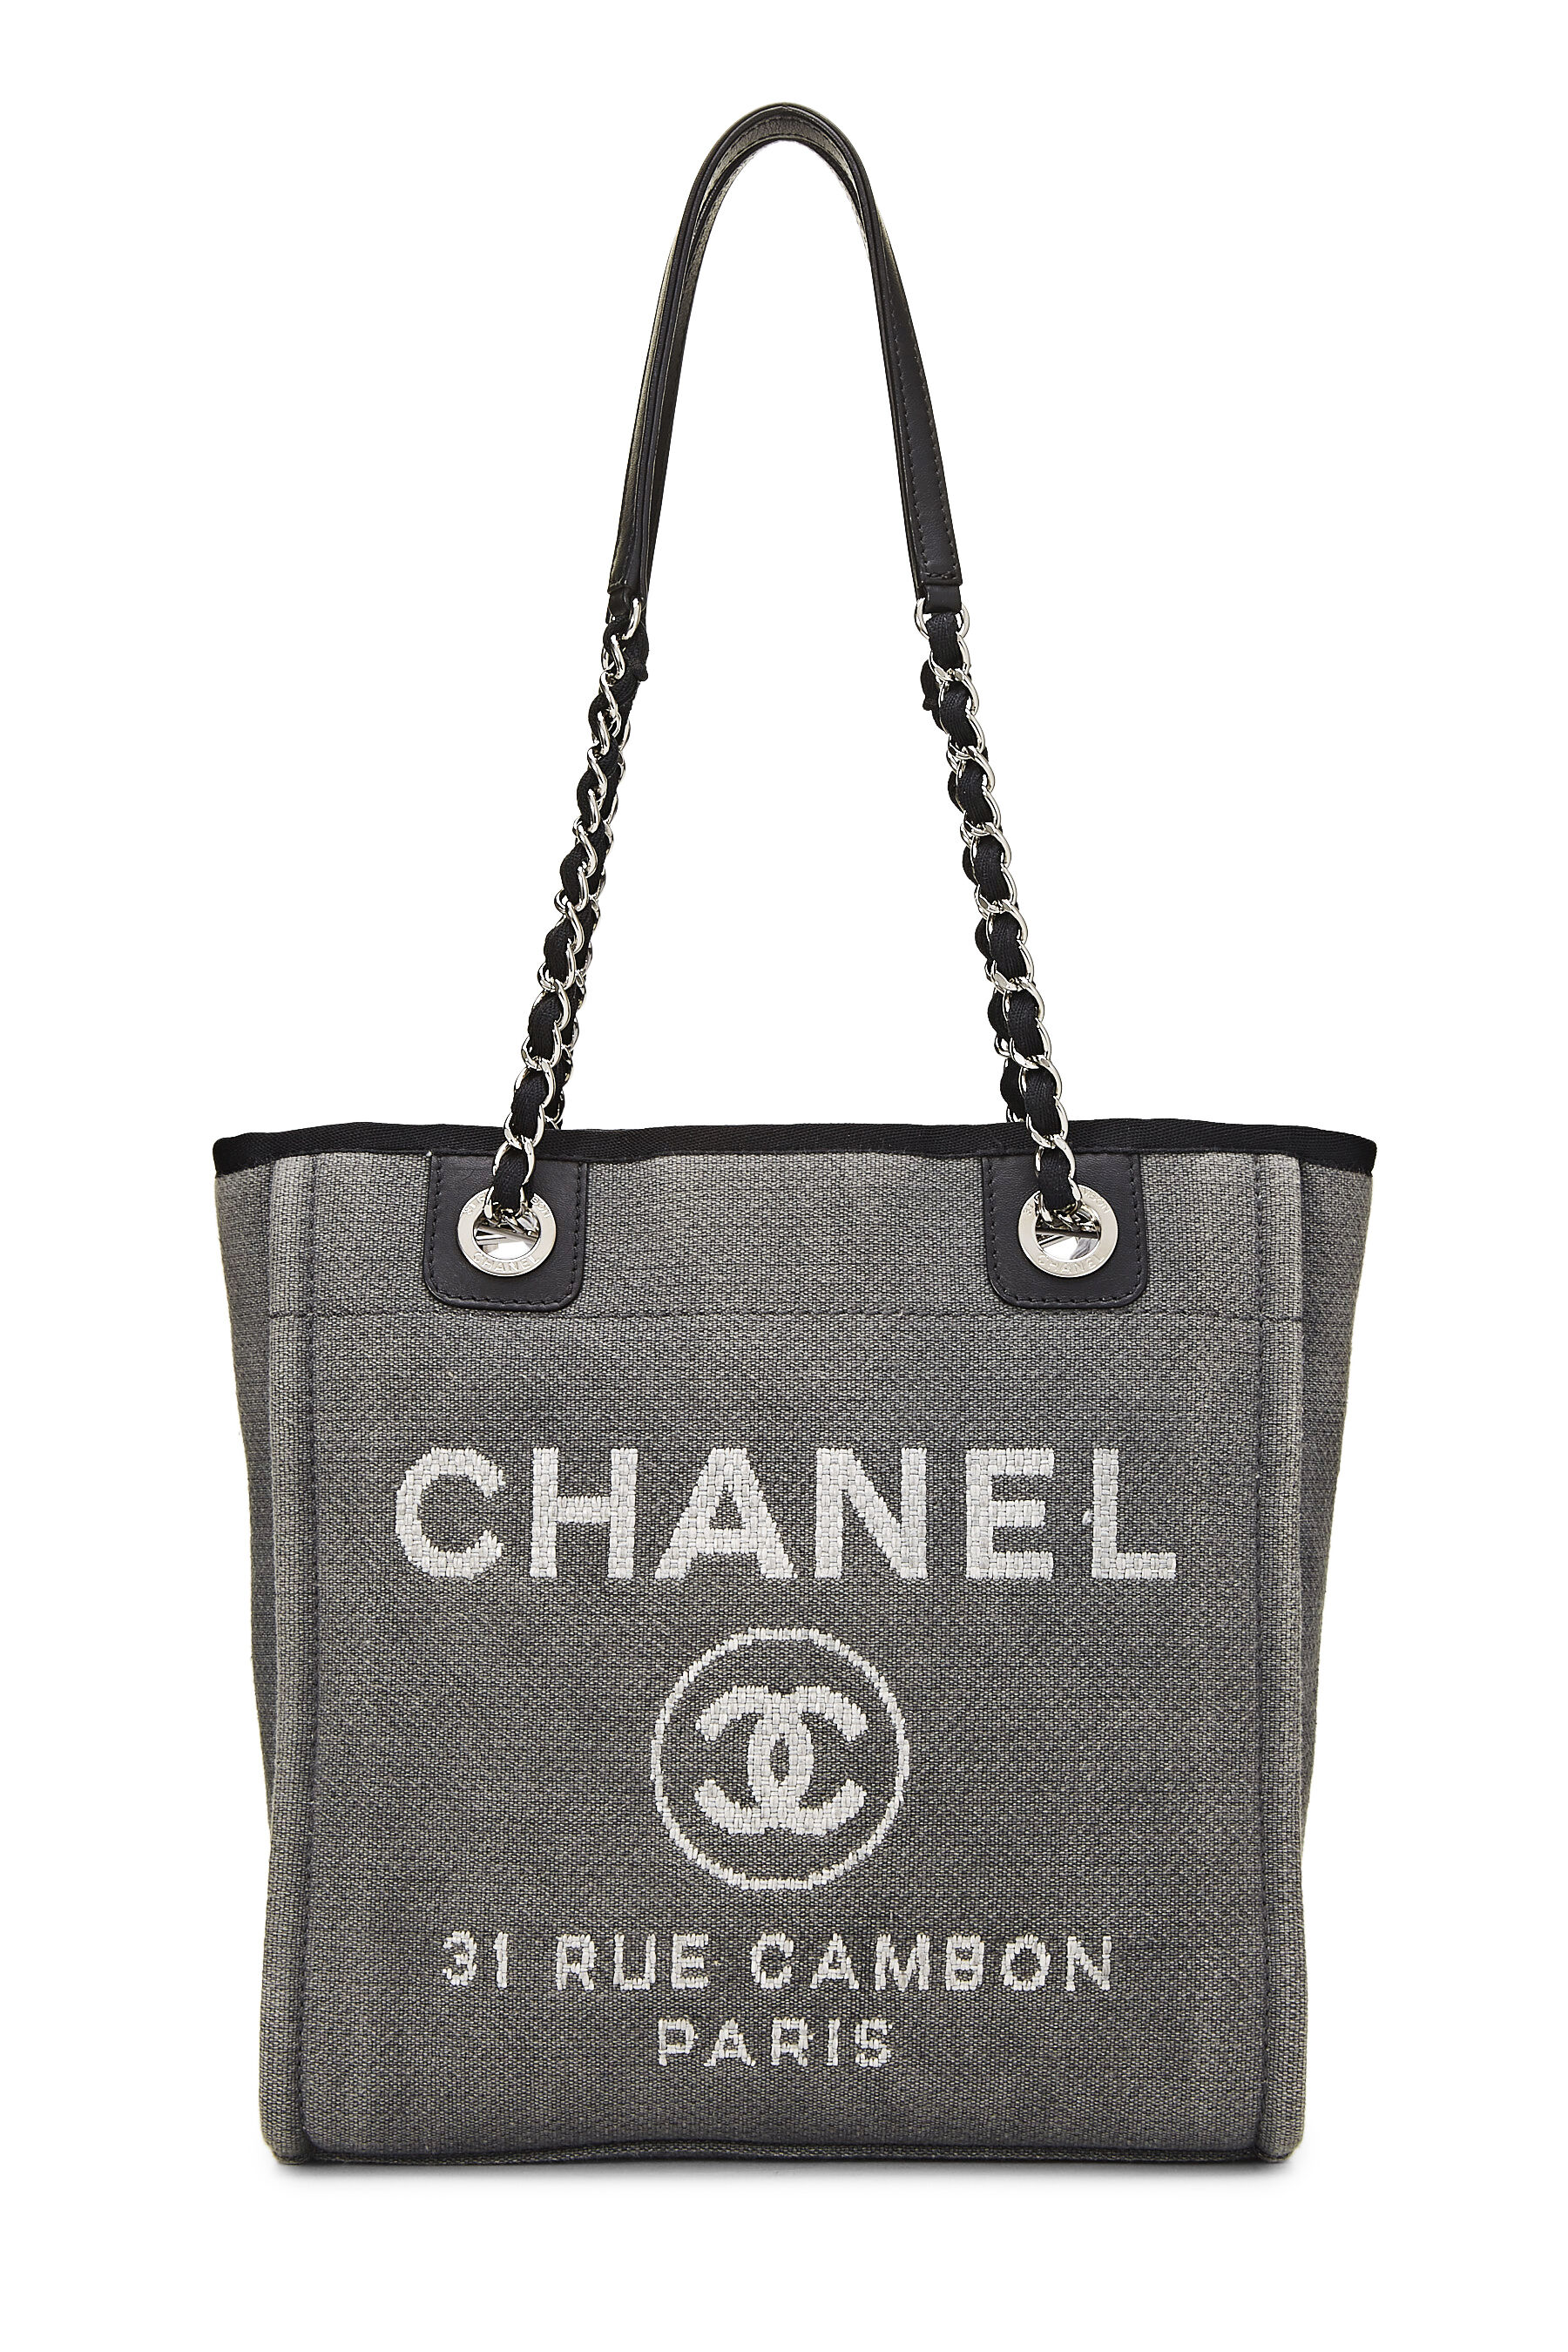 Chanel White Glazed Leather Small Deauville Tote Bag ○ Labellov